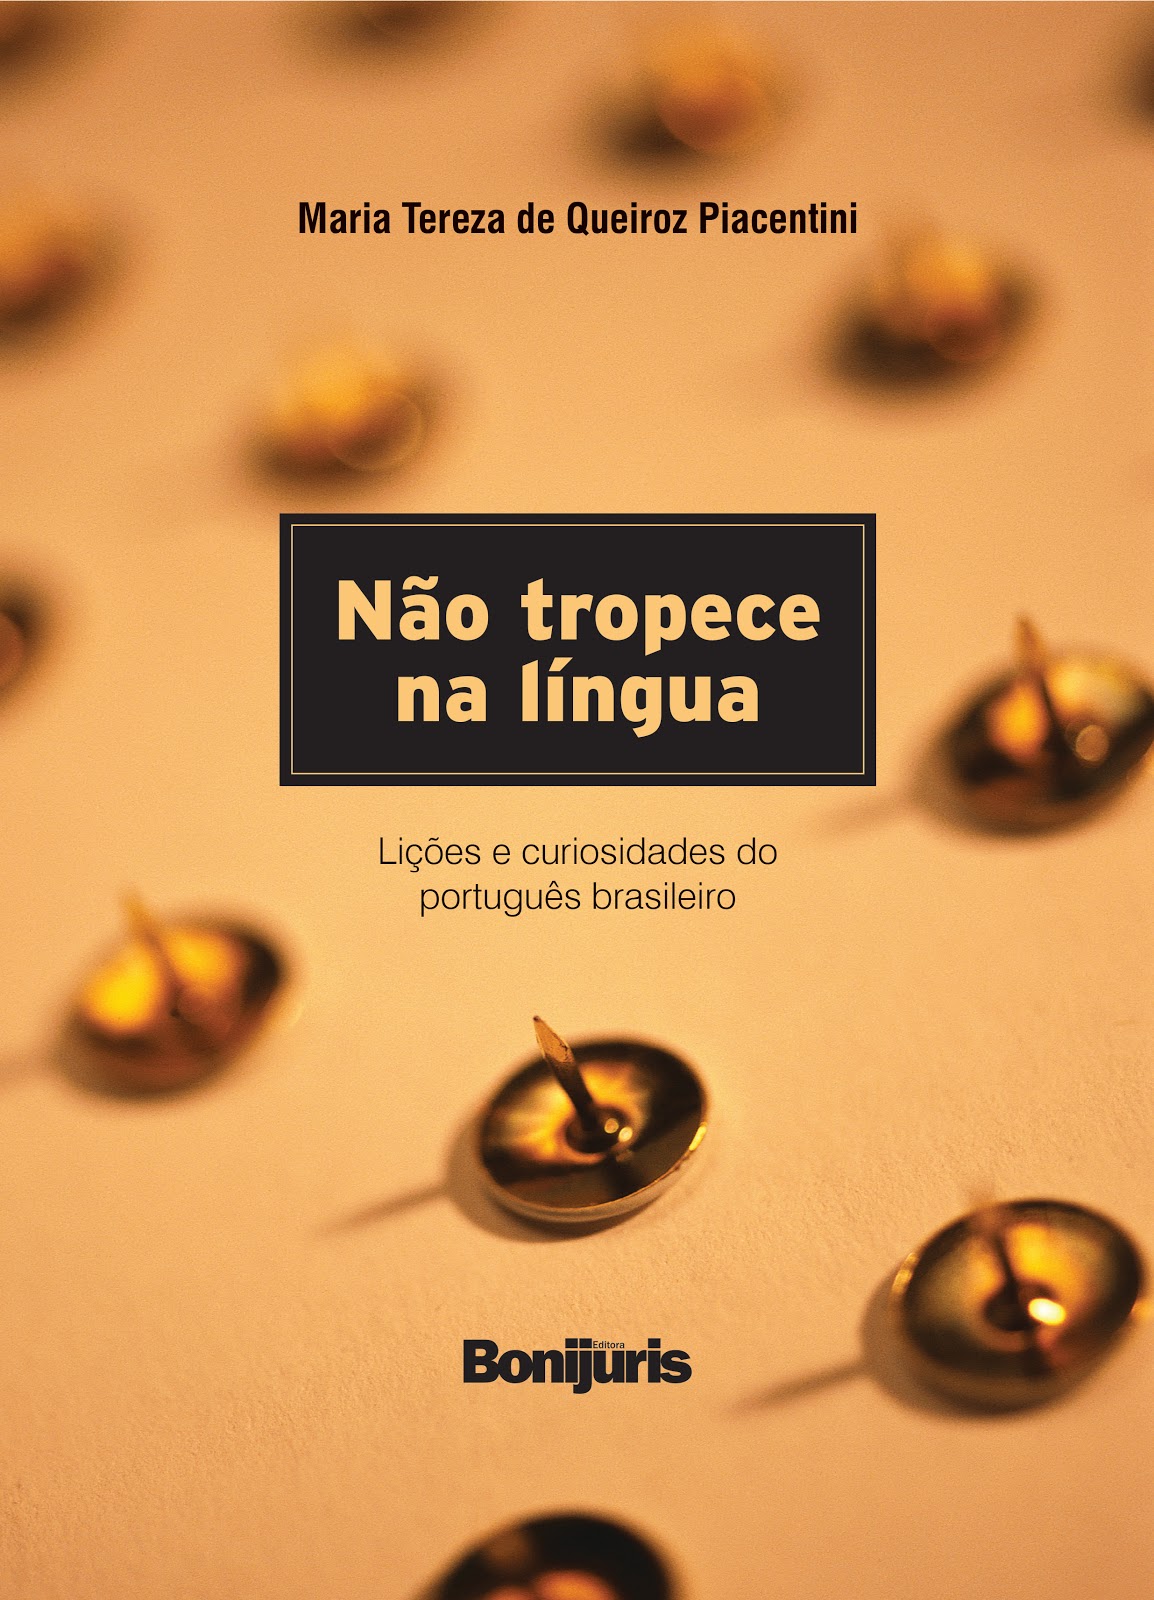 Livro de Piacentini  traz lições e curiosidades do português brasileiro